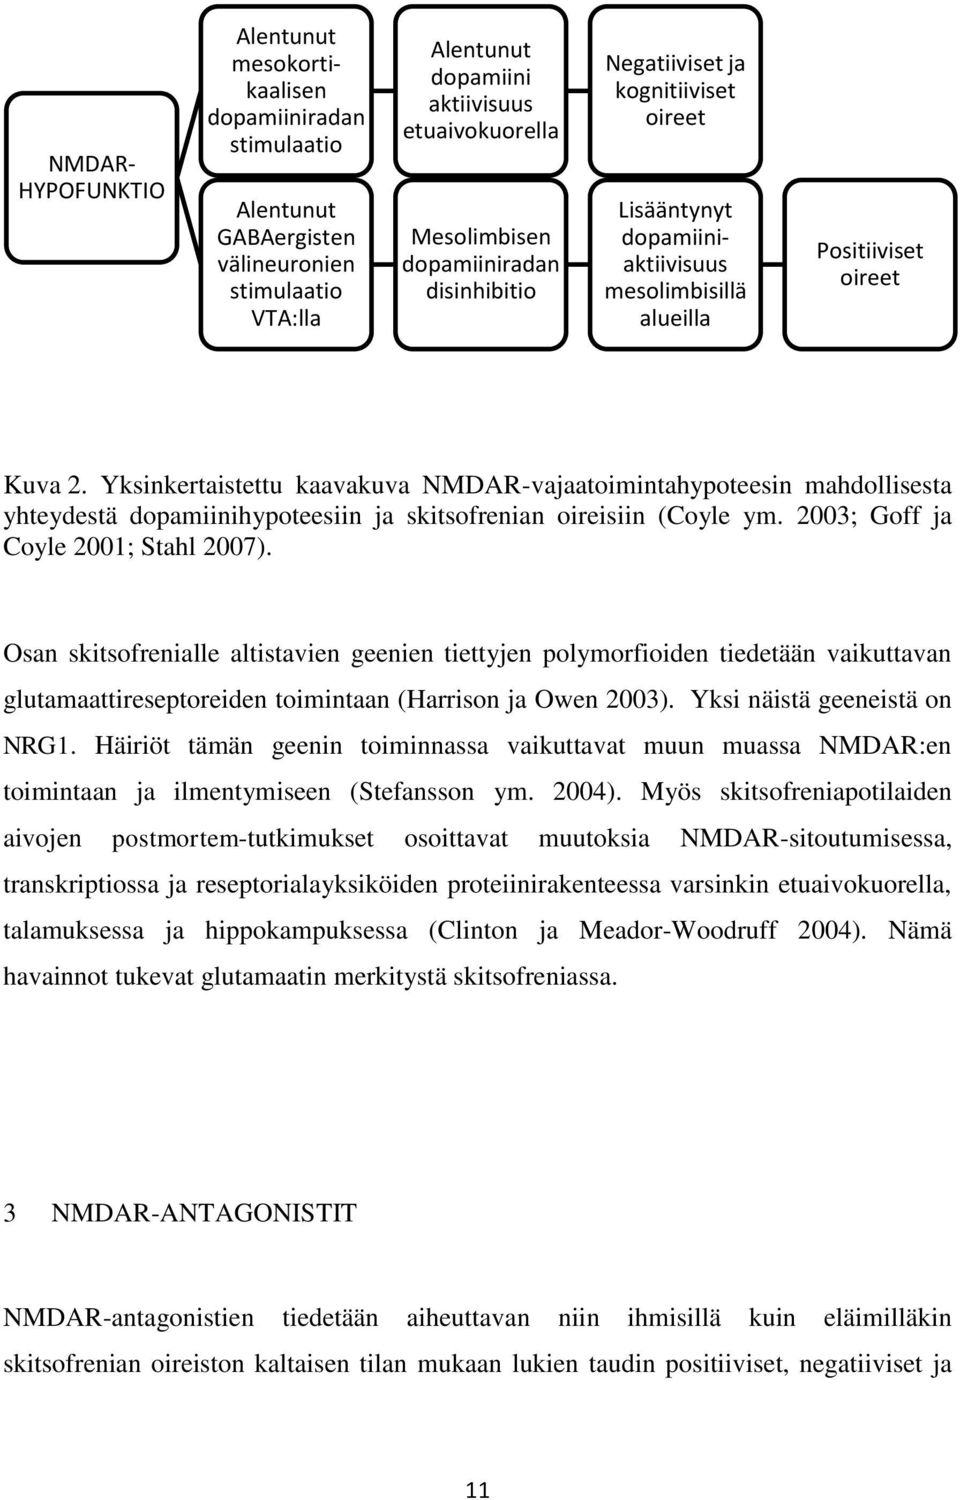 Yksinkertaistettu kaavakuva NMDAR-vajaatoimintahypoteesin mahdollisesta yhteydestä dopamiinihypoteesiin ja skitsofrenian oireisiin (Coyle ym. 2003; Goff ja Coyle 2001; Stahl 2007).